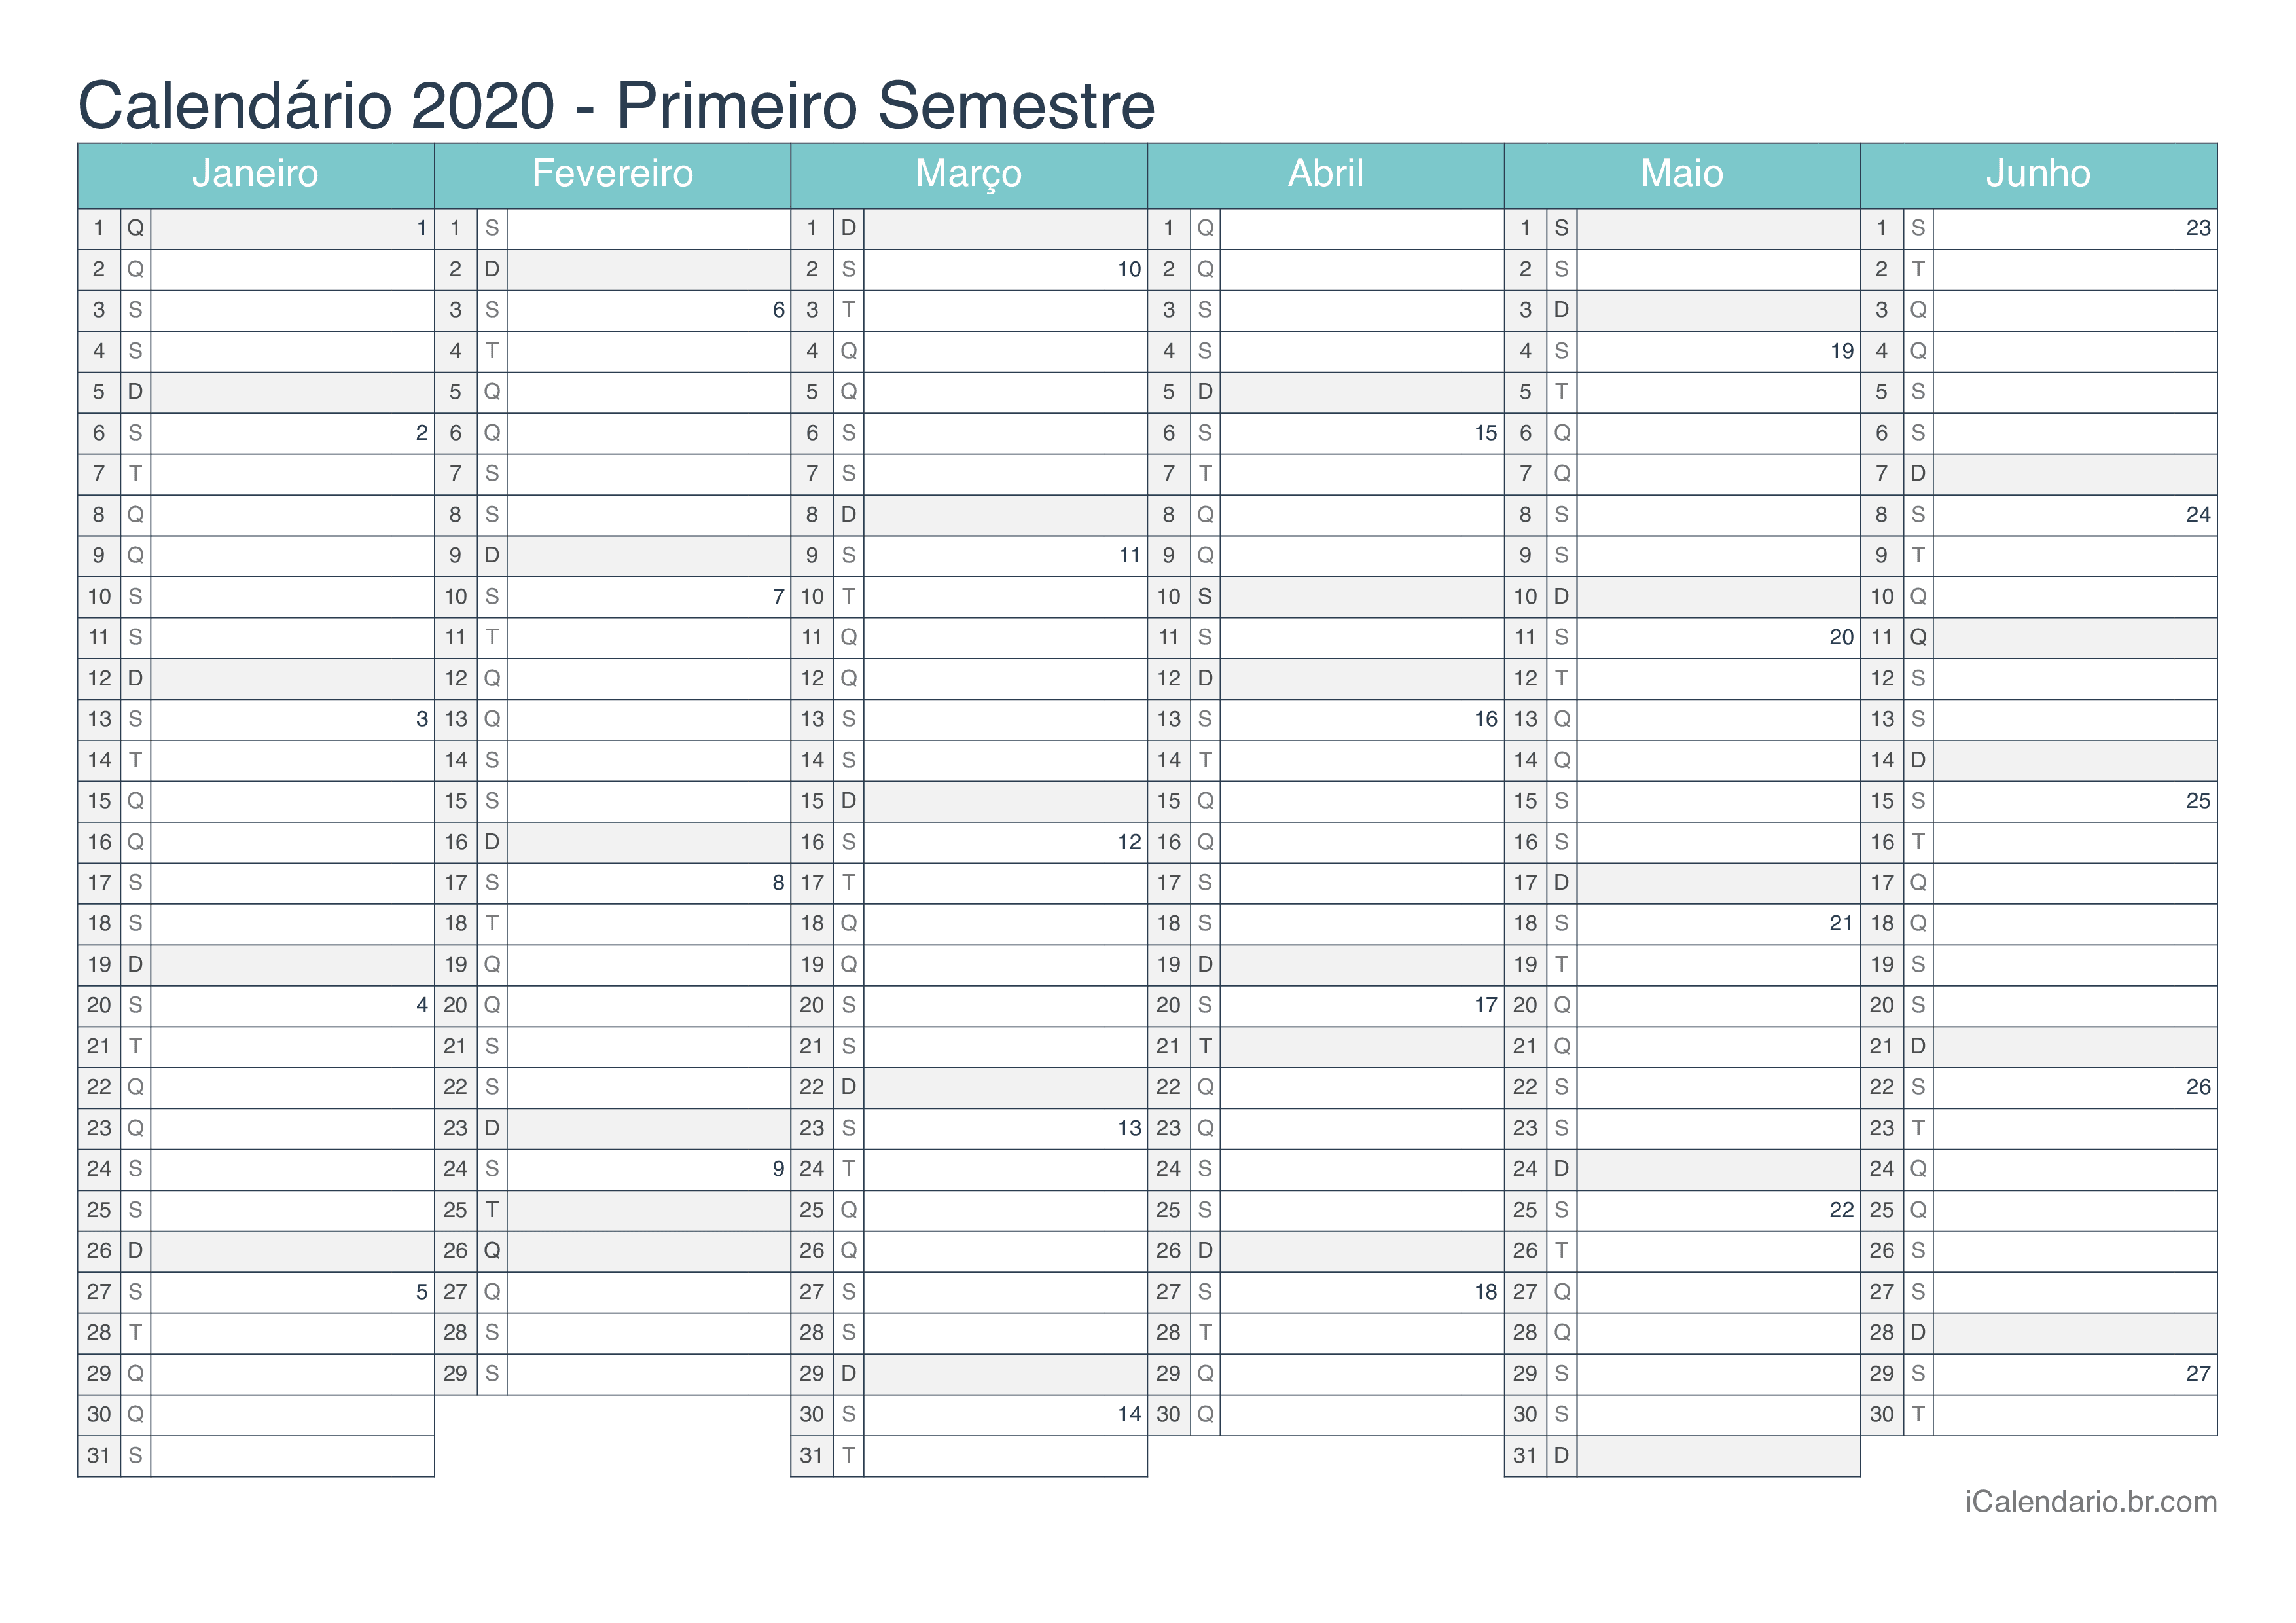 Calendário por semestre com números da semana 2020 - Turquesa